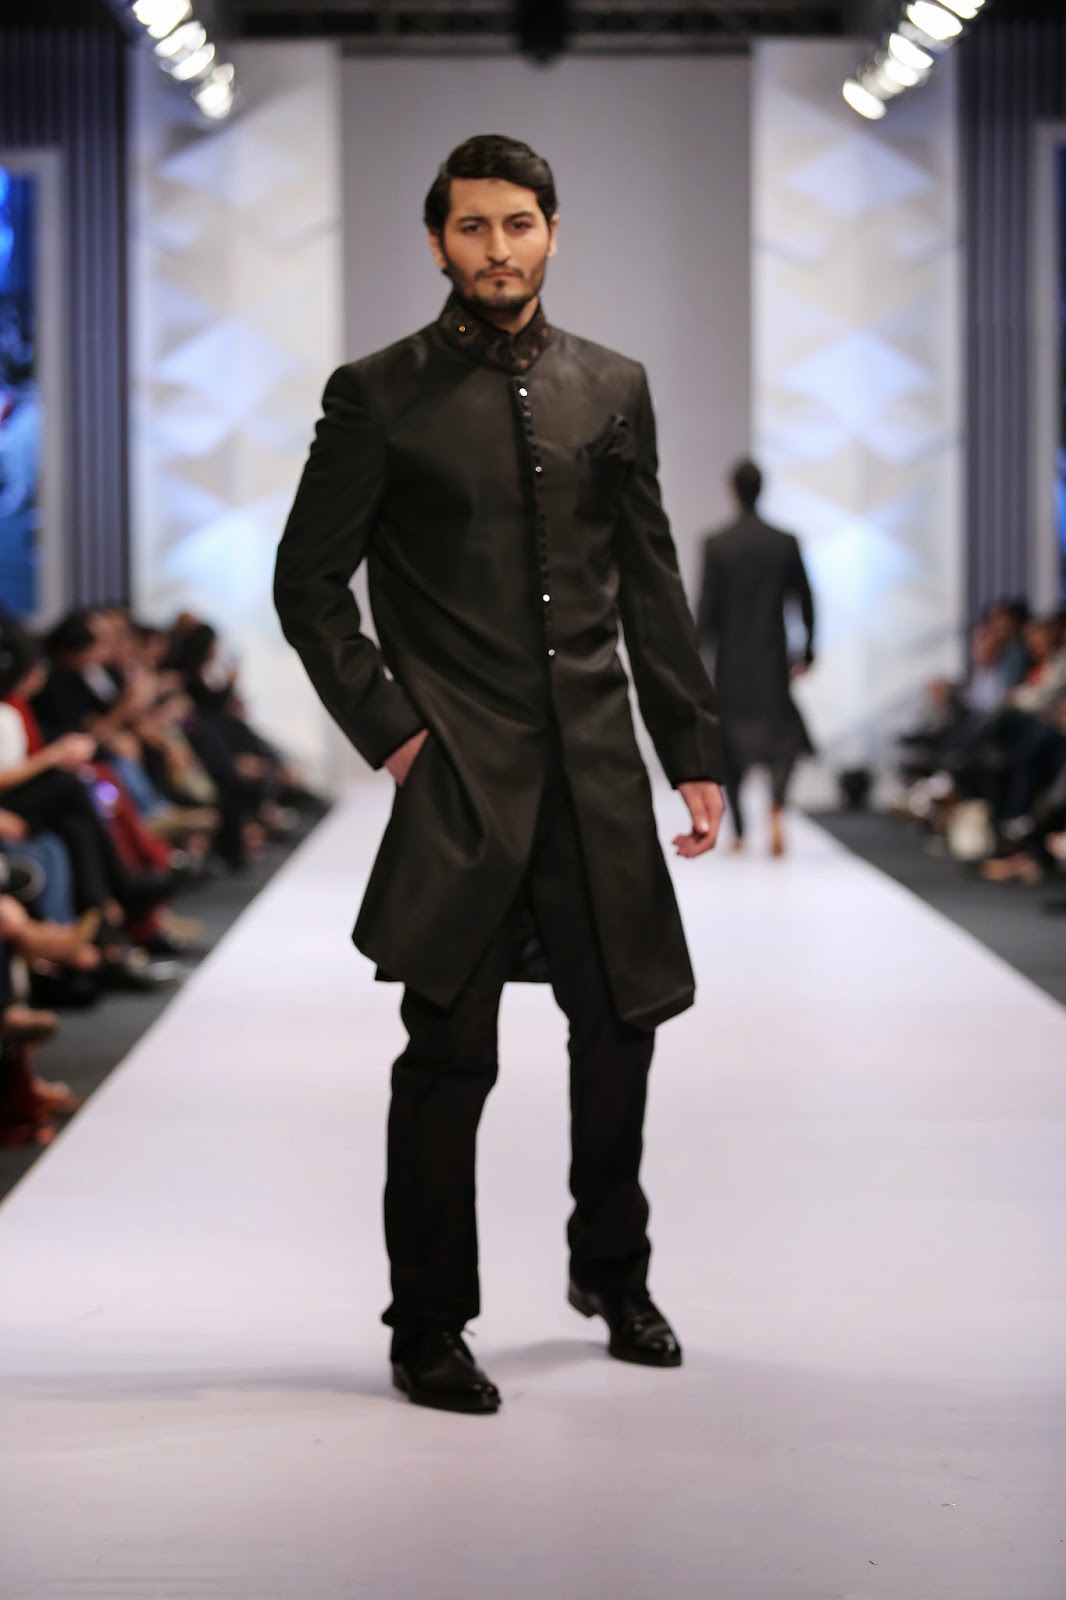 Pakistani Designer Nauman Arfeen